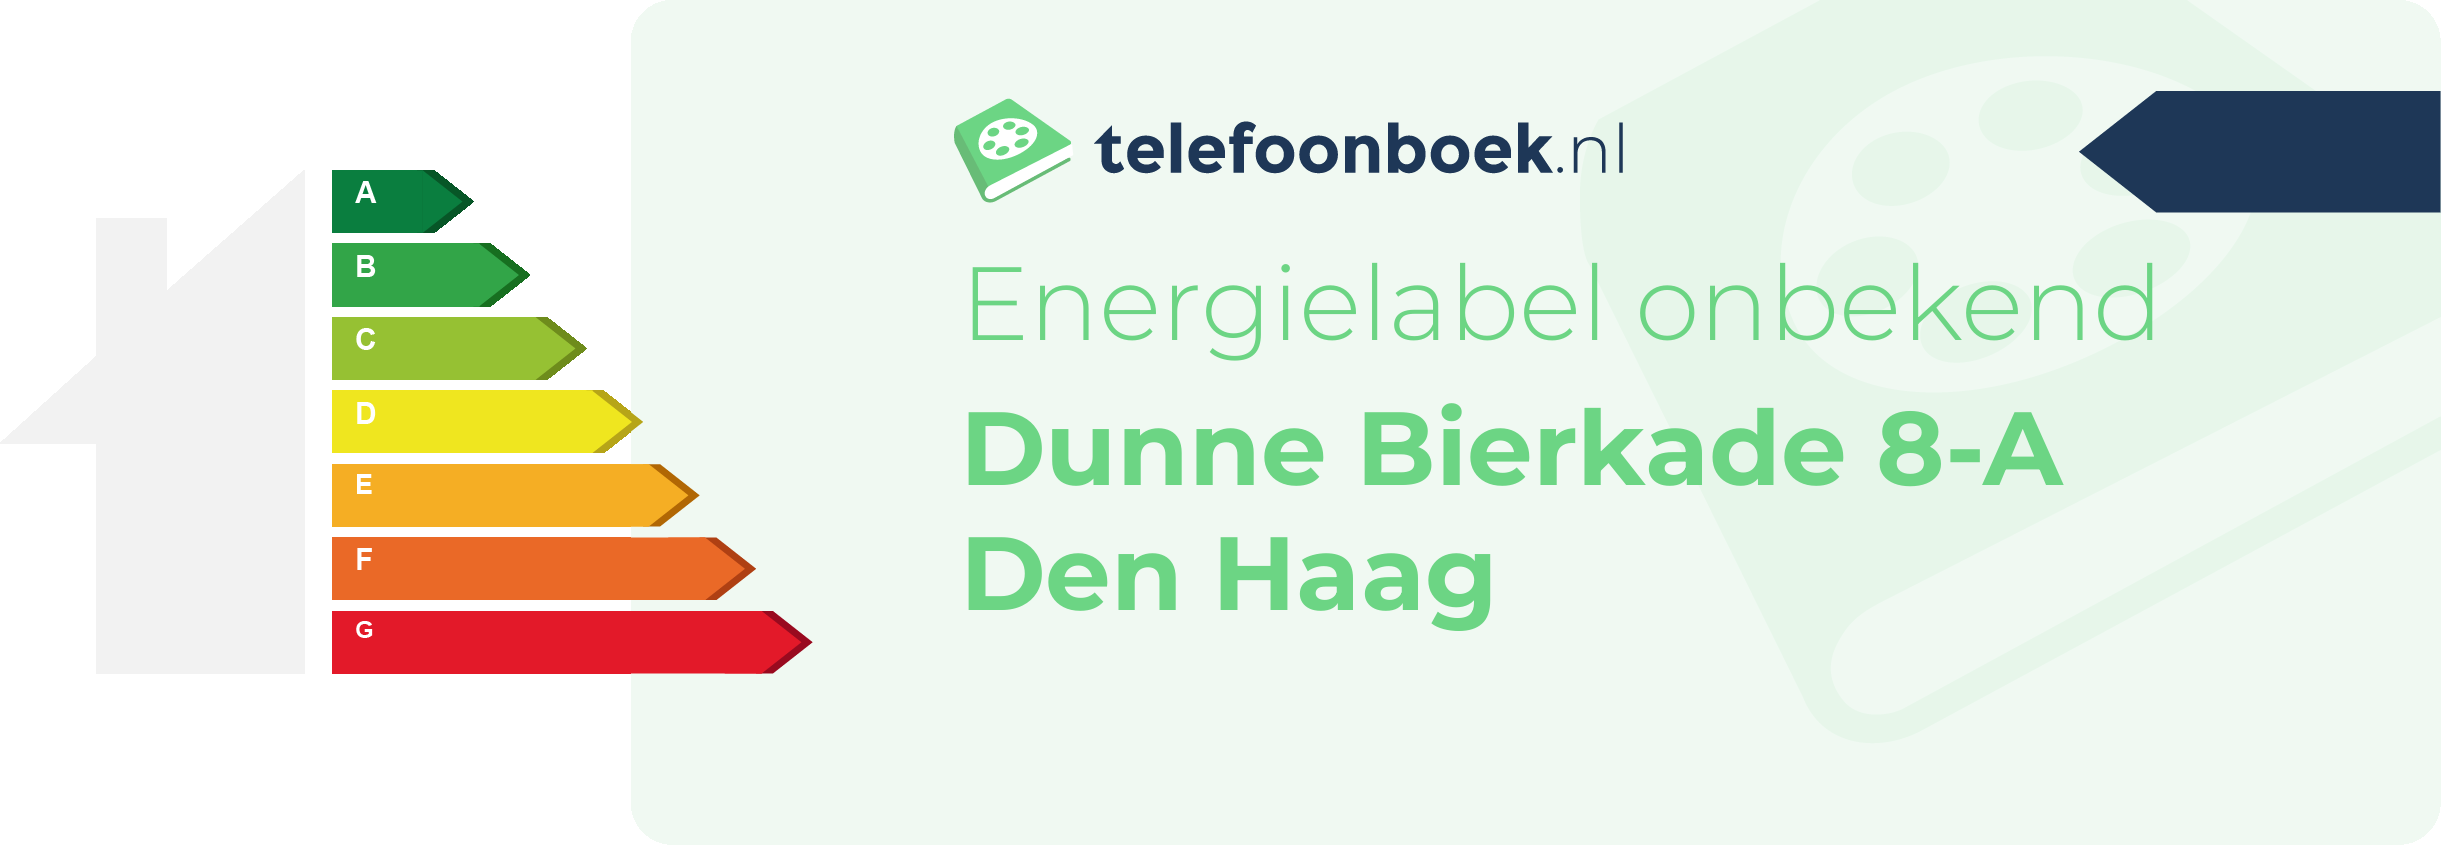 Energielabel Dunne Bierkade 8-A Den Haag